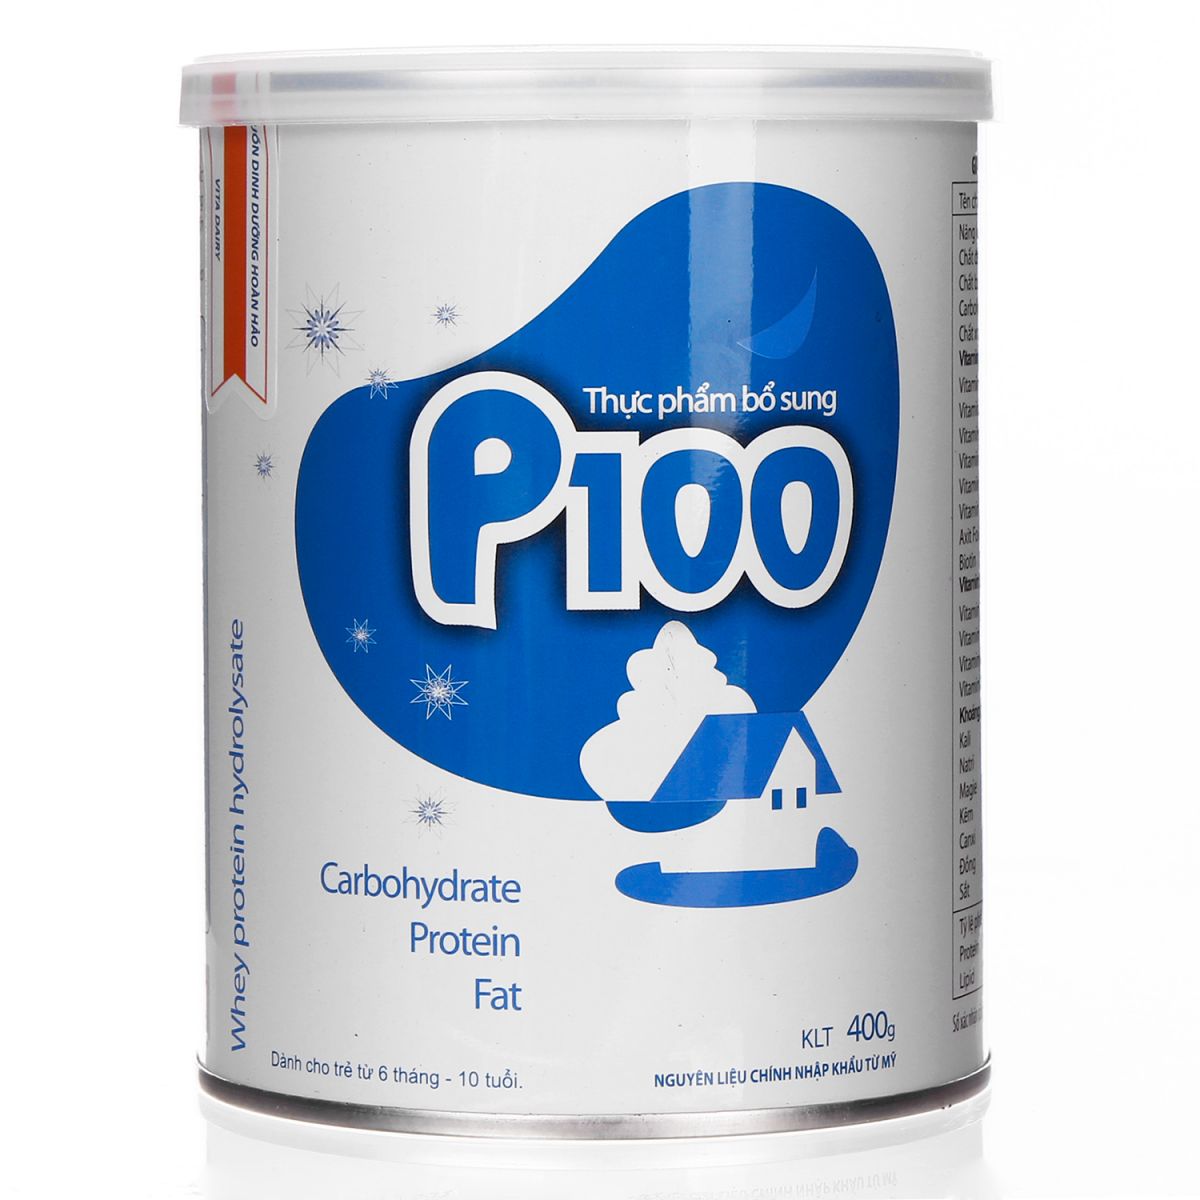 Sữa p100 bán ở đâu vừa có chất lượng tốt lại vừa có giá thành hợp lý?3